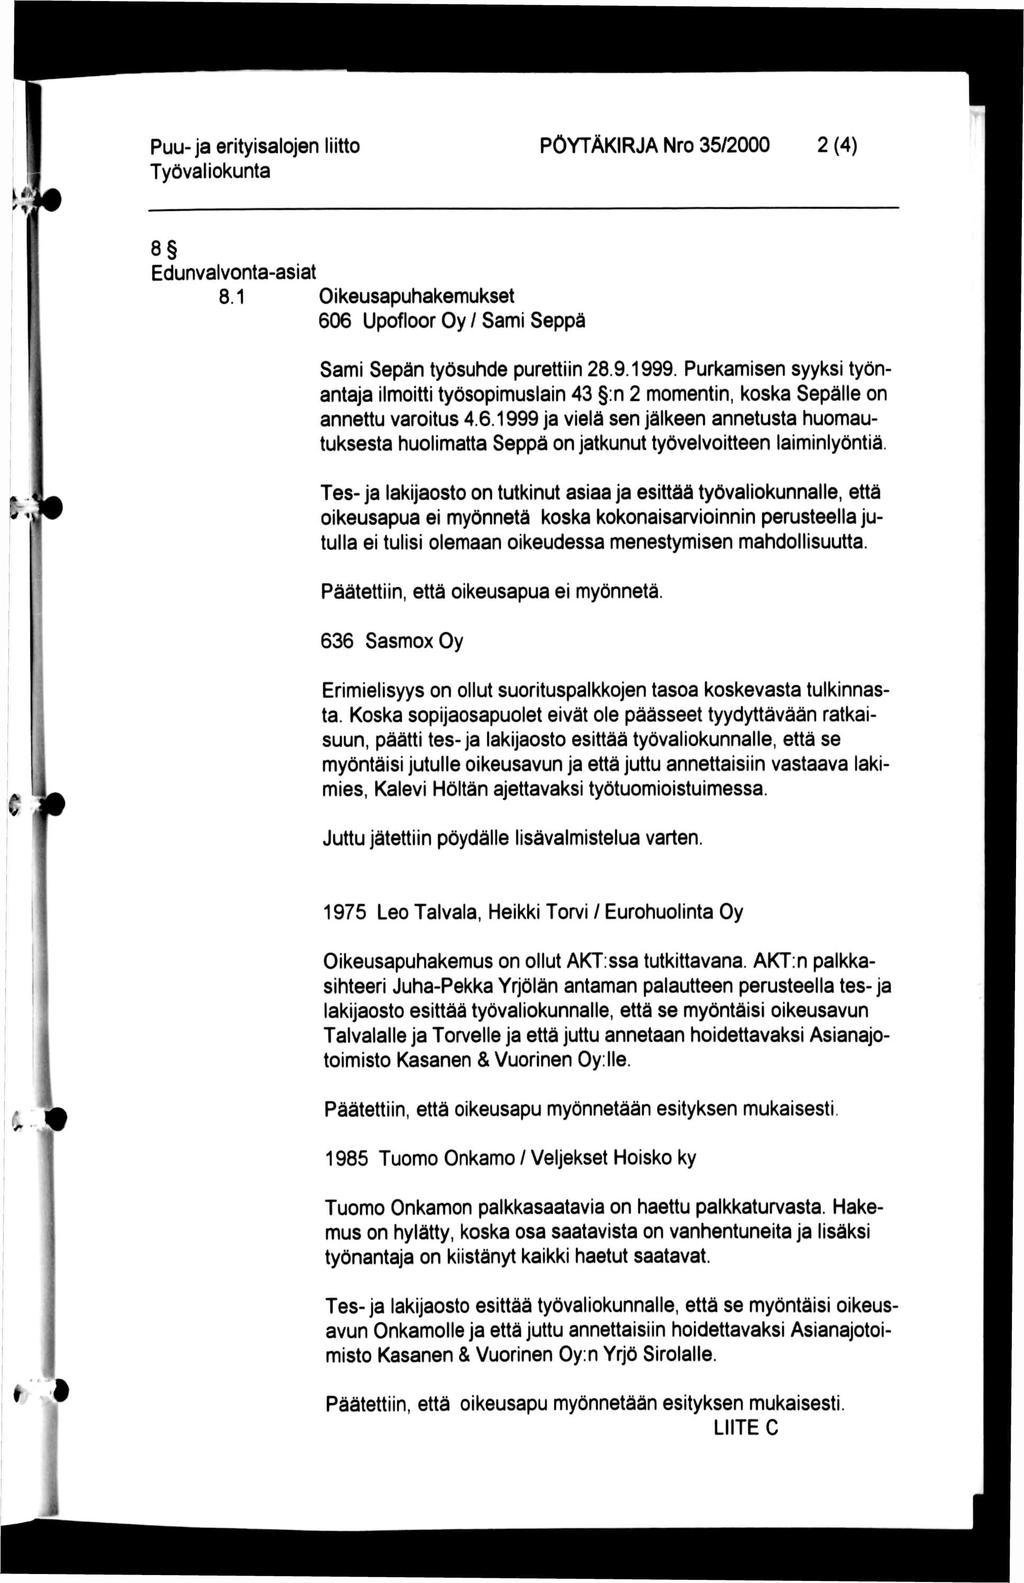 Puu-ja erityisalojen liitto PÖYTÄKIRJA Nro 35/2000 2 (4) 8 Edunvalvonta-asiat 8.1 Oikeusapuhakemukset 606 Upofloor Oy / Sami Seppä Sami Sepän työsuhde purettiin 28.9.1999.